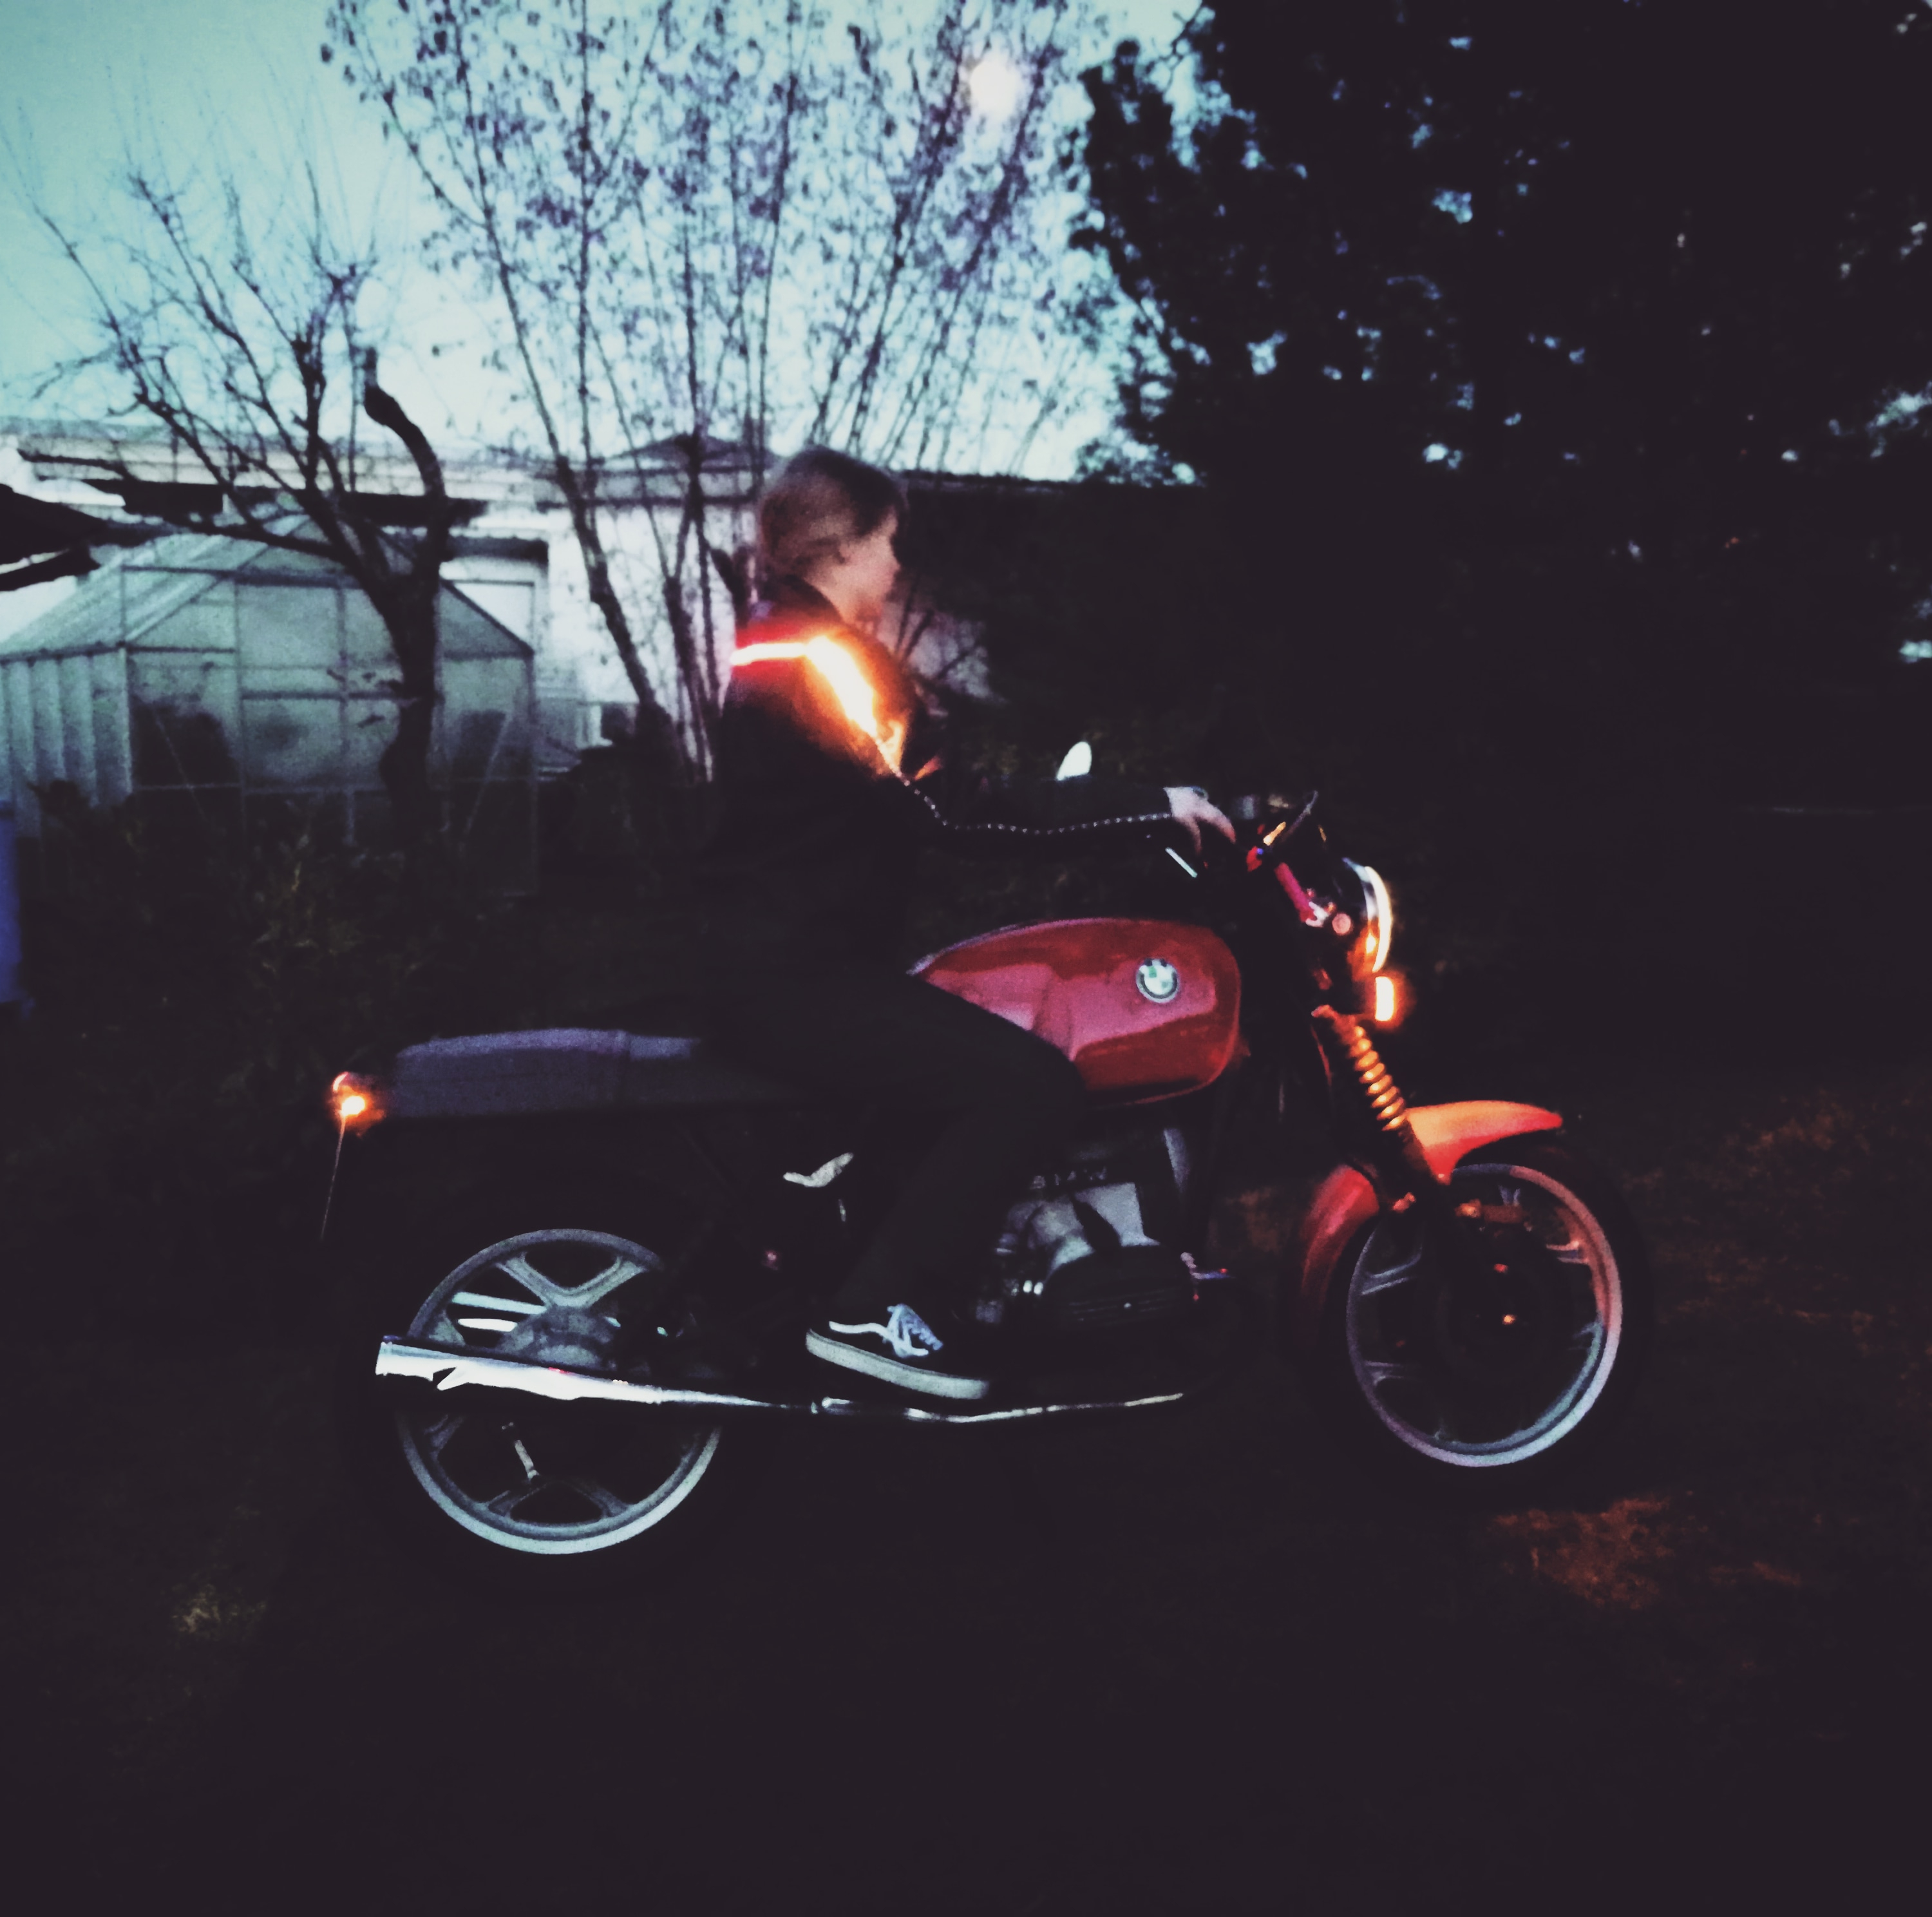 Foto der blinkenden Jacke und Motorrad von der Seite.